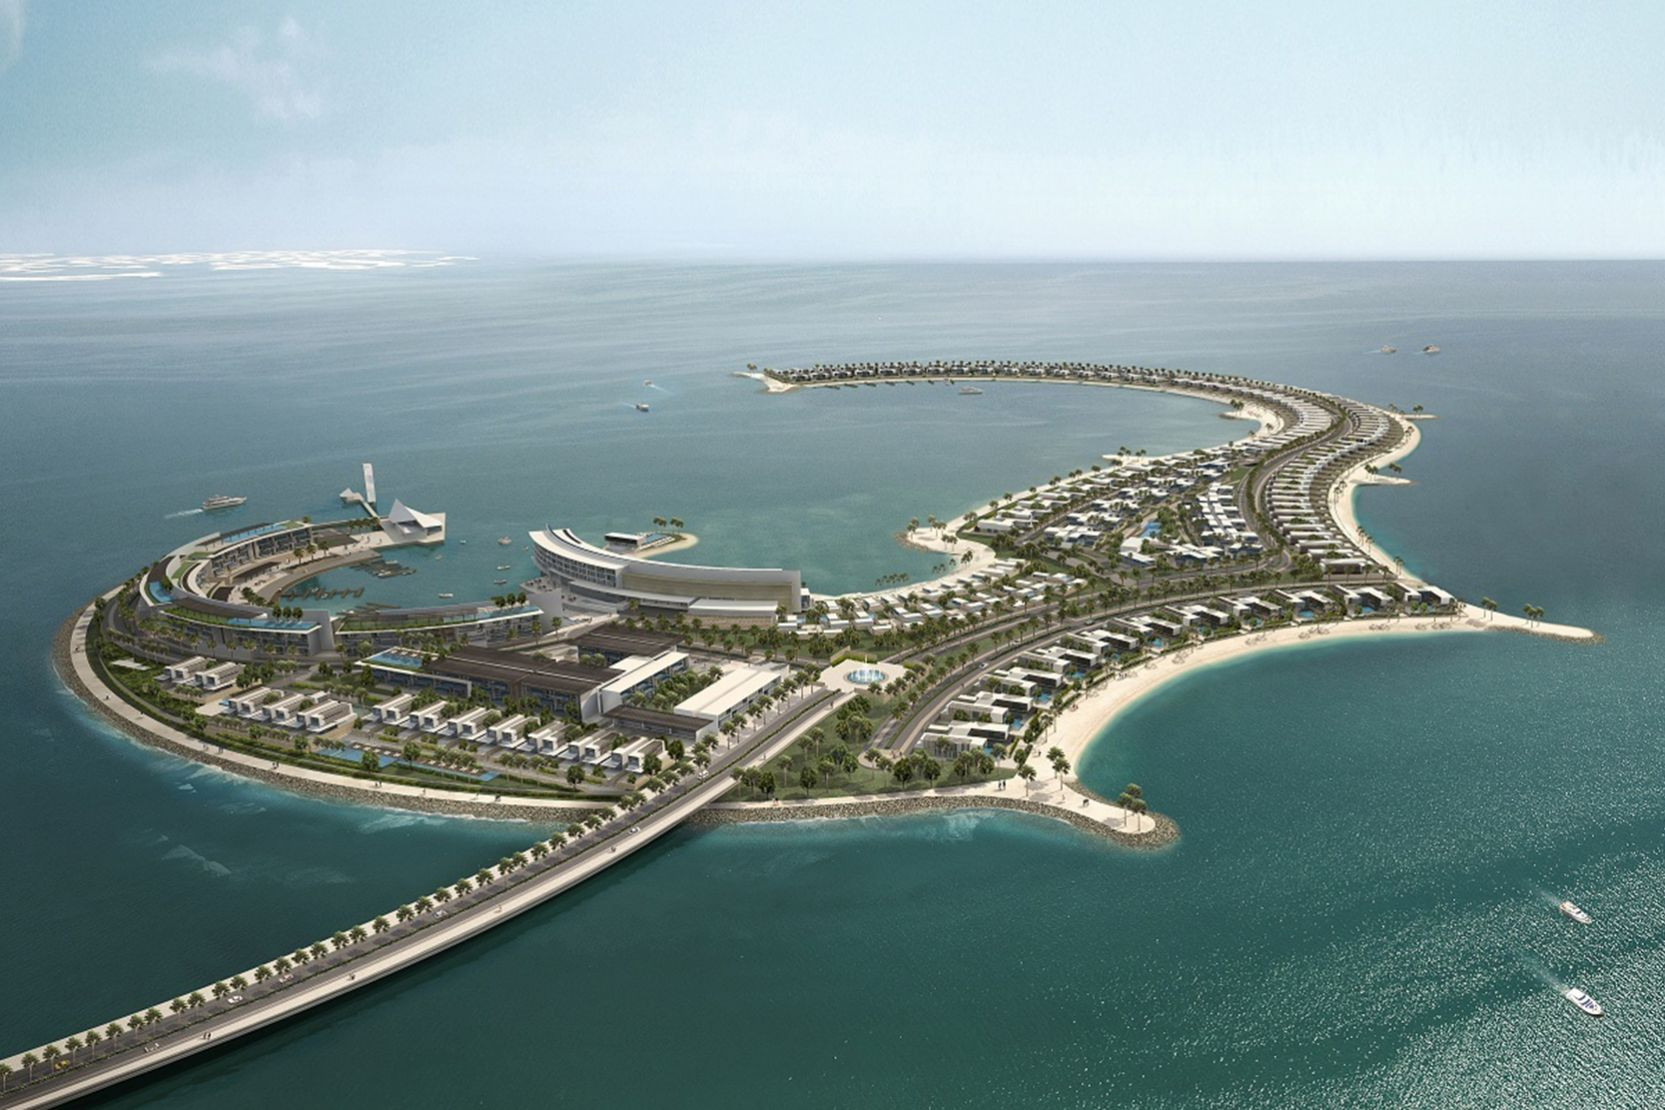 Độc lạ Dubai: Chi 10 triệu USD mua bãi cát rộng chưa bằng nửa sân bóng đá, 2 năm sau bán lại giá lời gấp 3 lần, phá kỷ lục giá cho giao dịch đất nền tại Dubai - Ảnh 3.